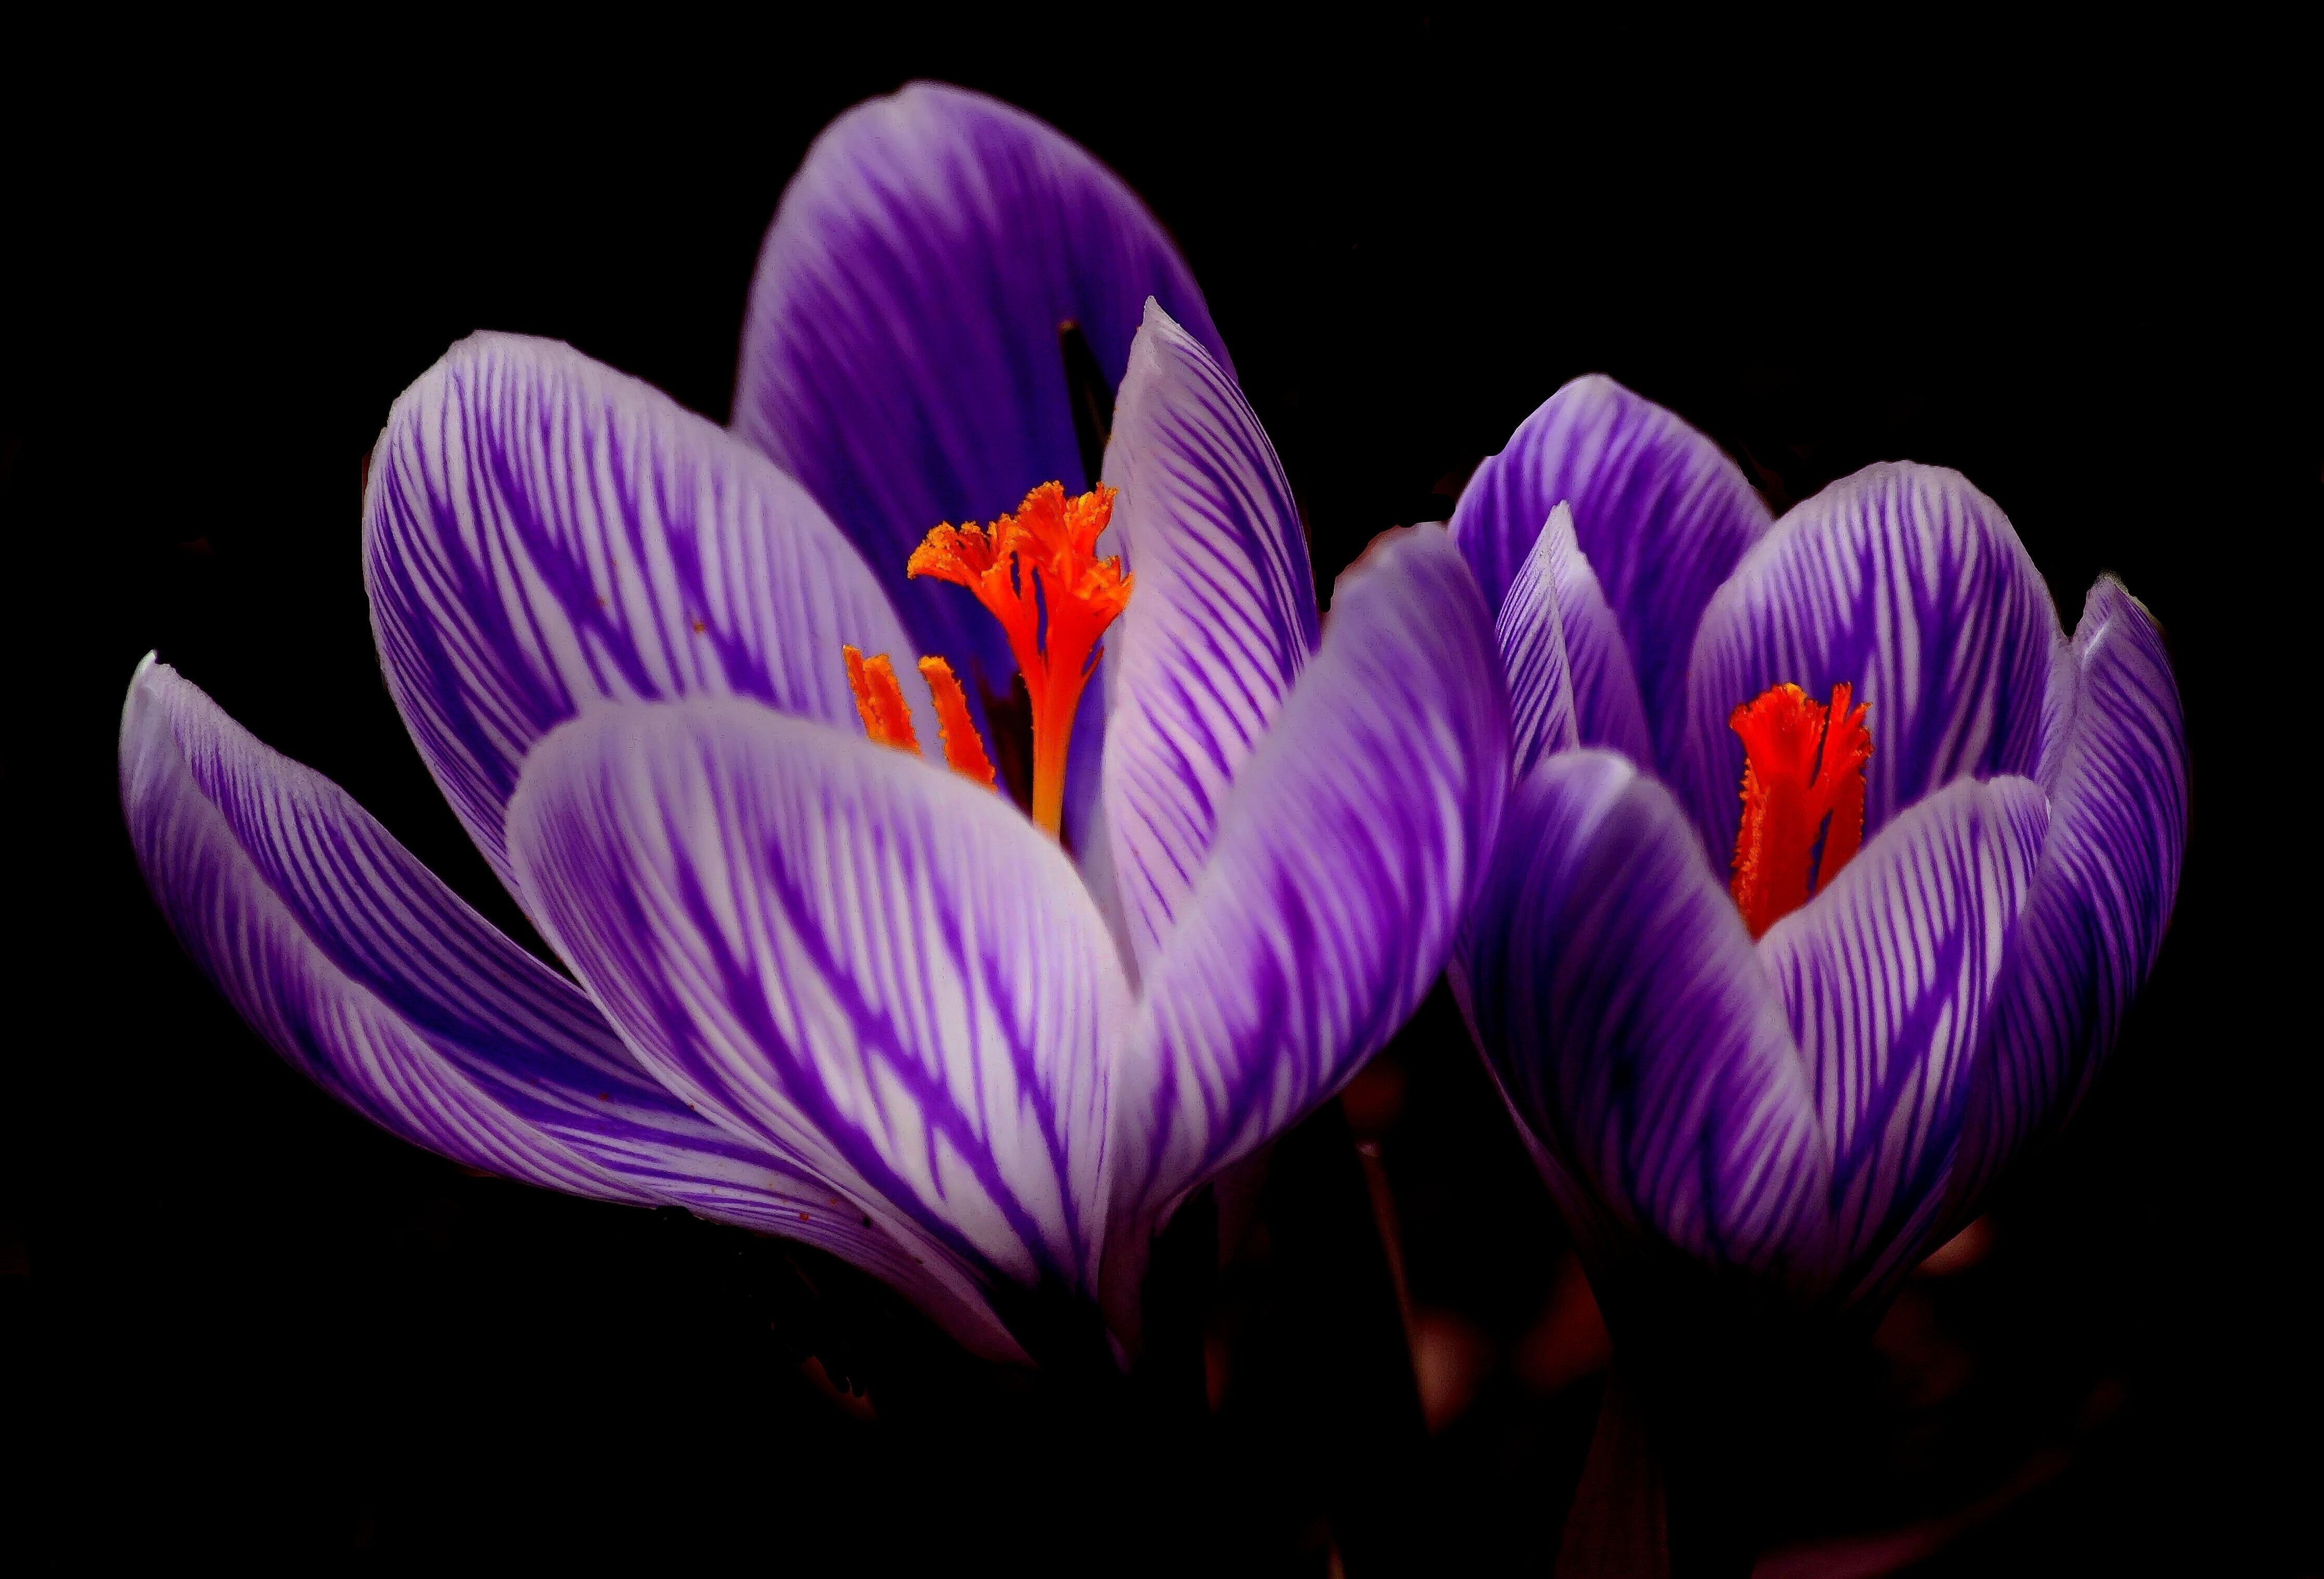 Saffron Flower Image